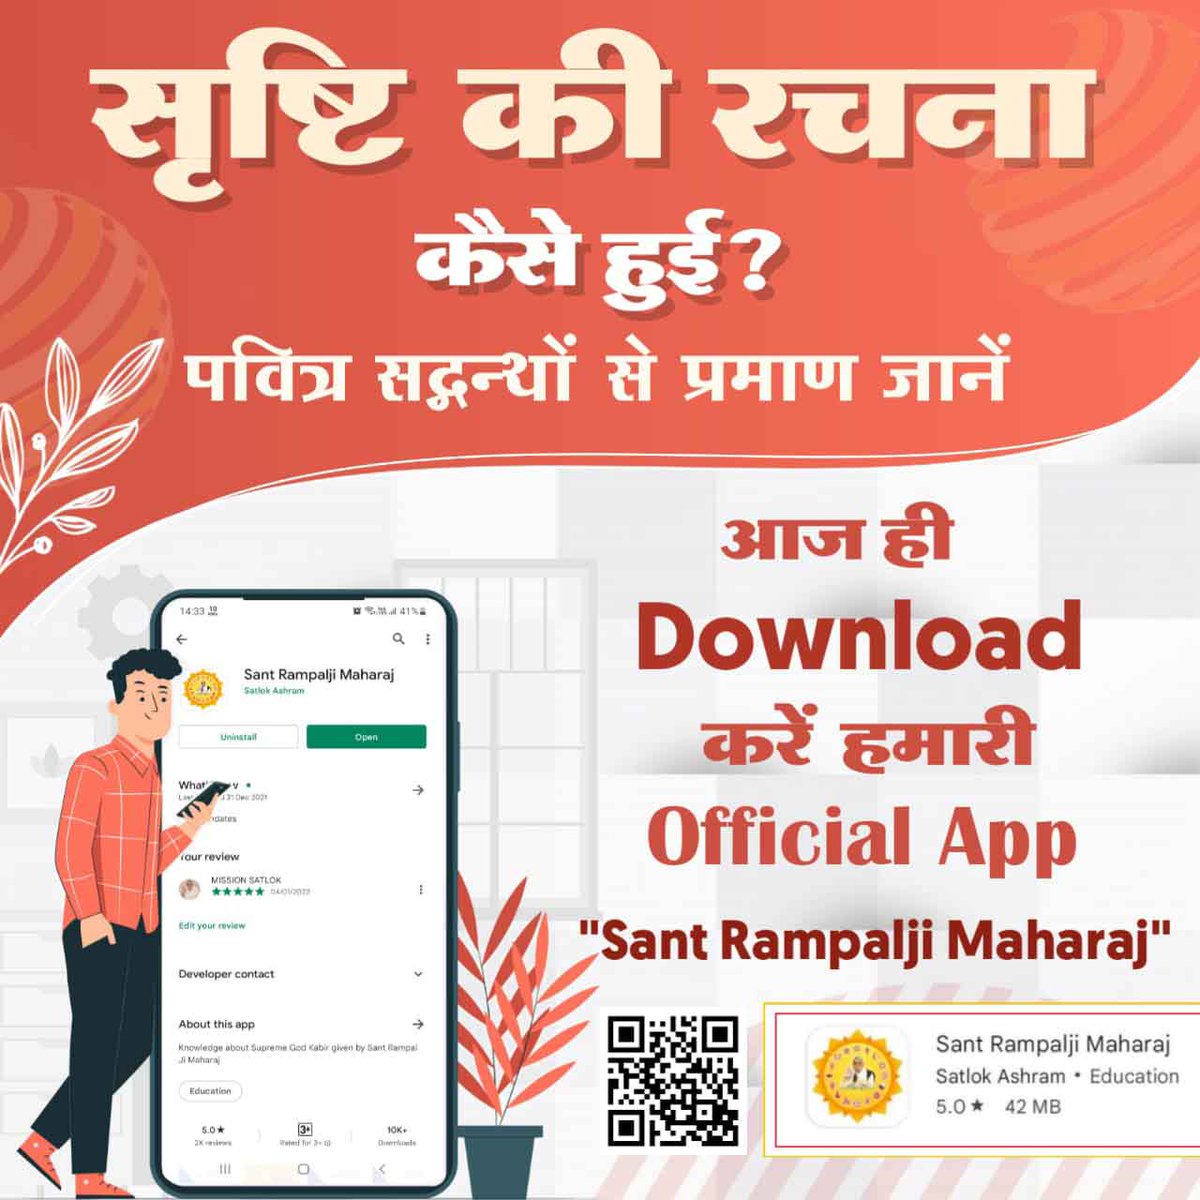 #Sant_Rampalji_Maharaj_App
#availableonplaystore
सृष्टि की रचना कैसे हुई पवित्र ग्रंथों से प्रमाण जानने के लिए 'Sant Rampalji Maharaj' App Download करें Playstore से।